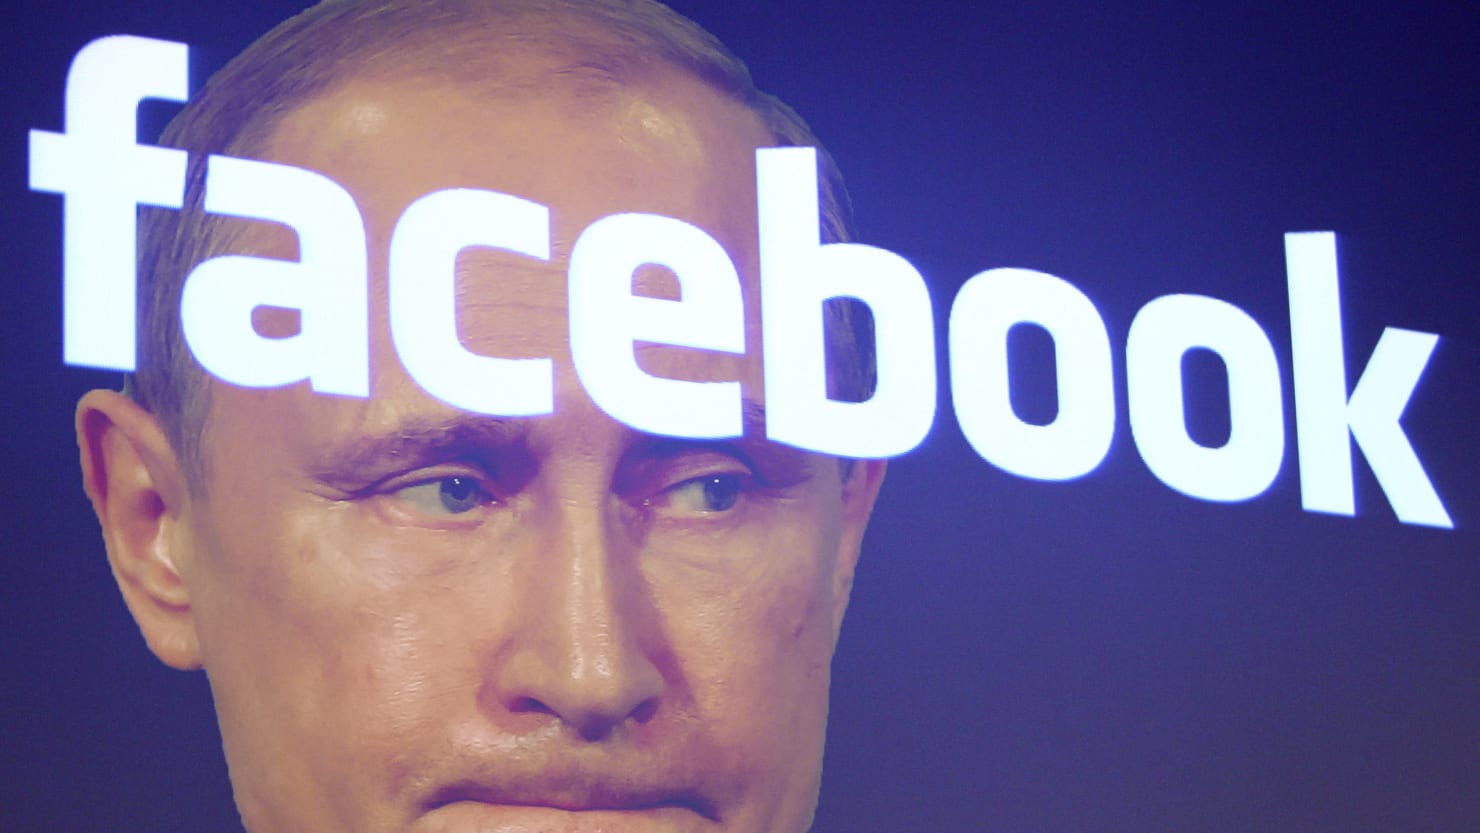 У Facebook та Instagram зупинили російську інформаційну кампанію проти України